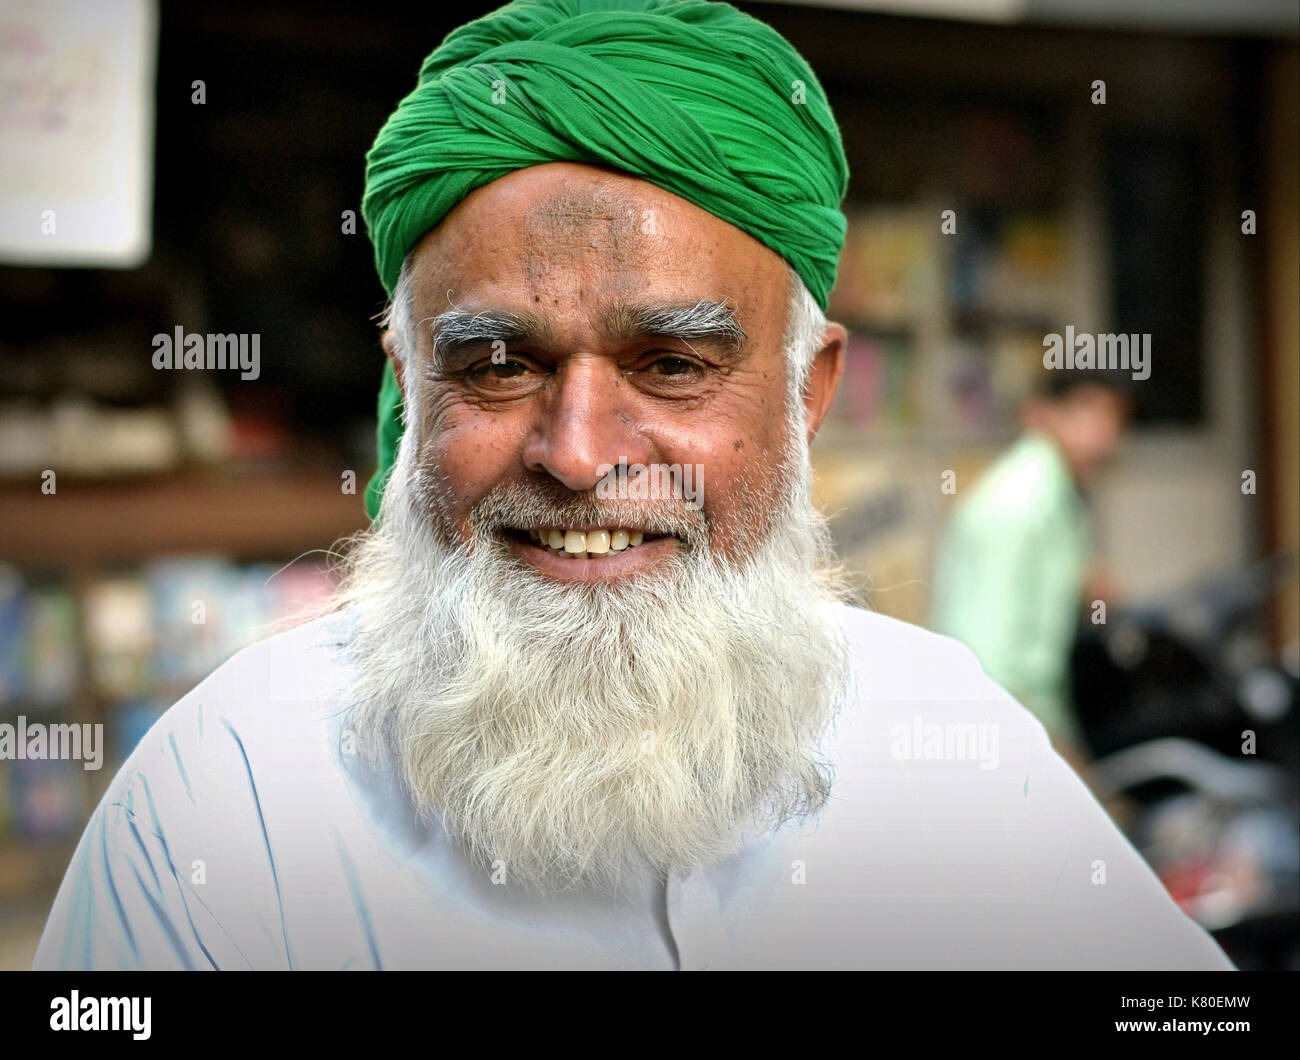 Un homme musulman indien âgé avec une barbe pleine et une bosse de prière musulmanes blanches (zéba) sur son front porte un turban vert et des sourires pour la caméra. Banque D'Images